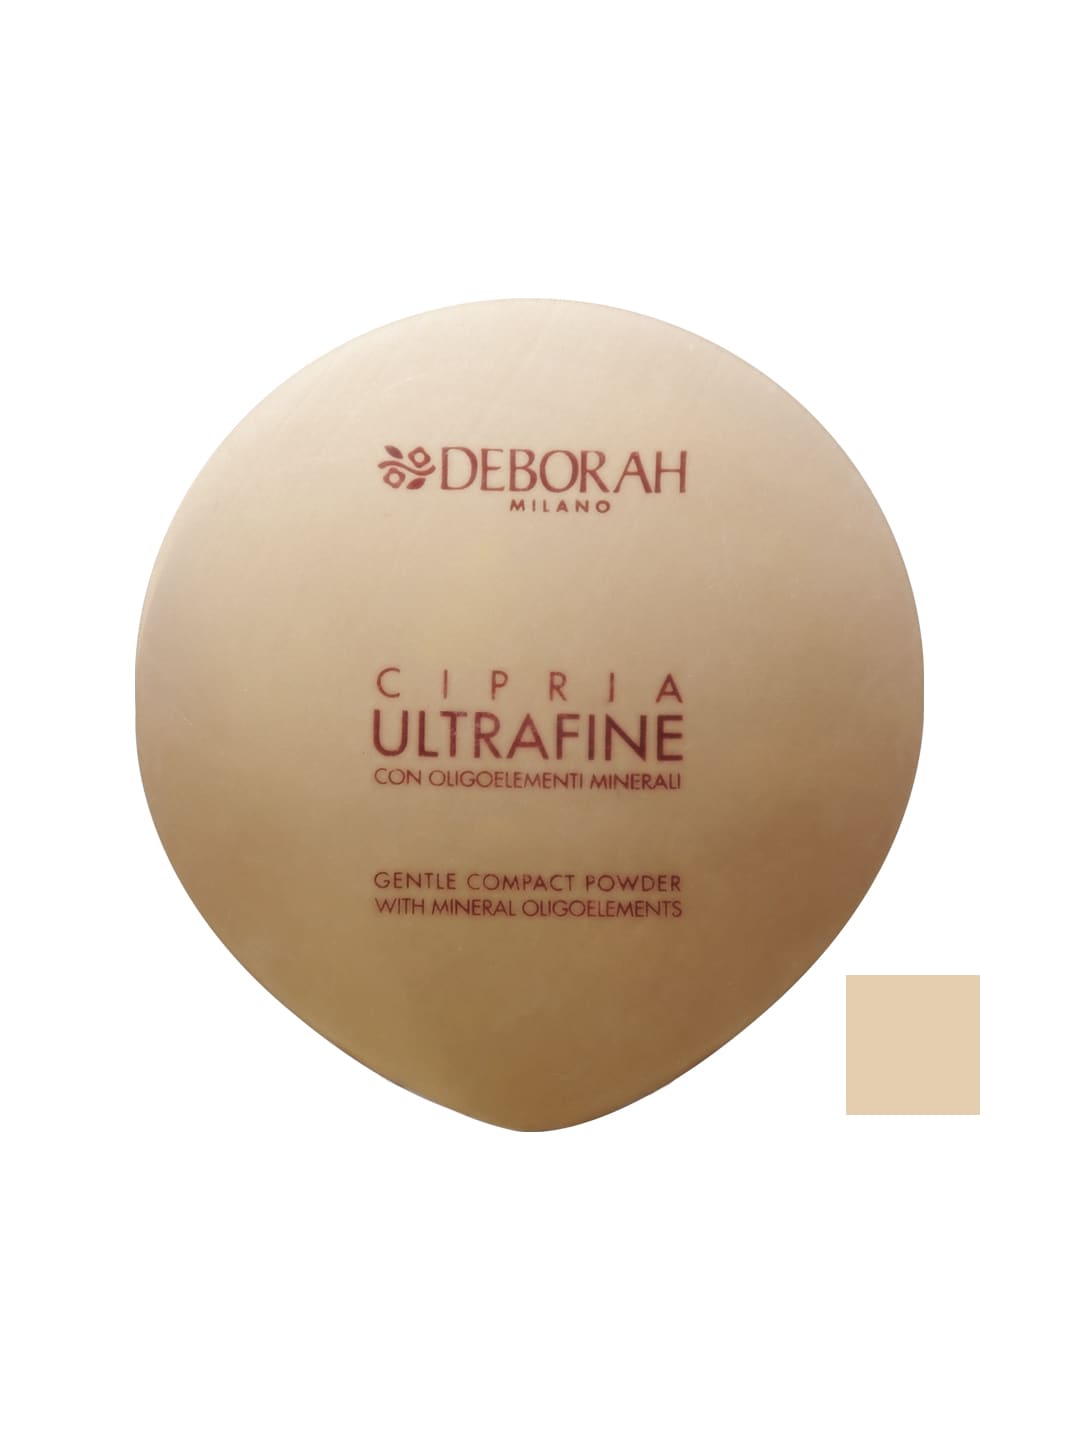 Deborah Ultrafine Compact Powder 01